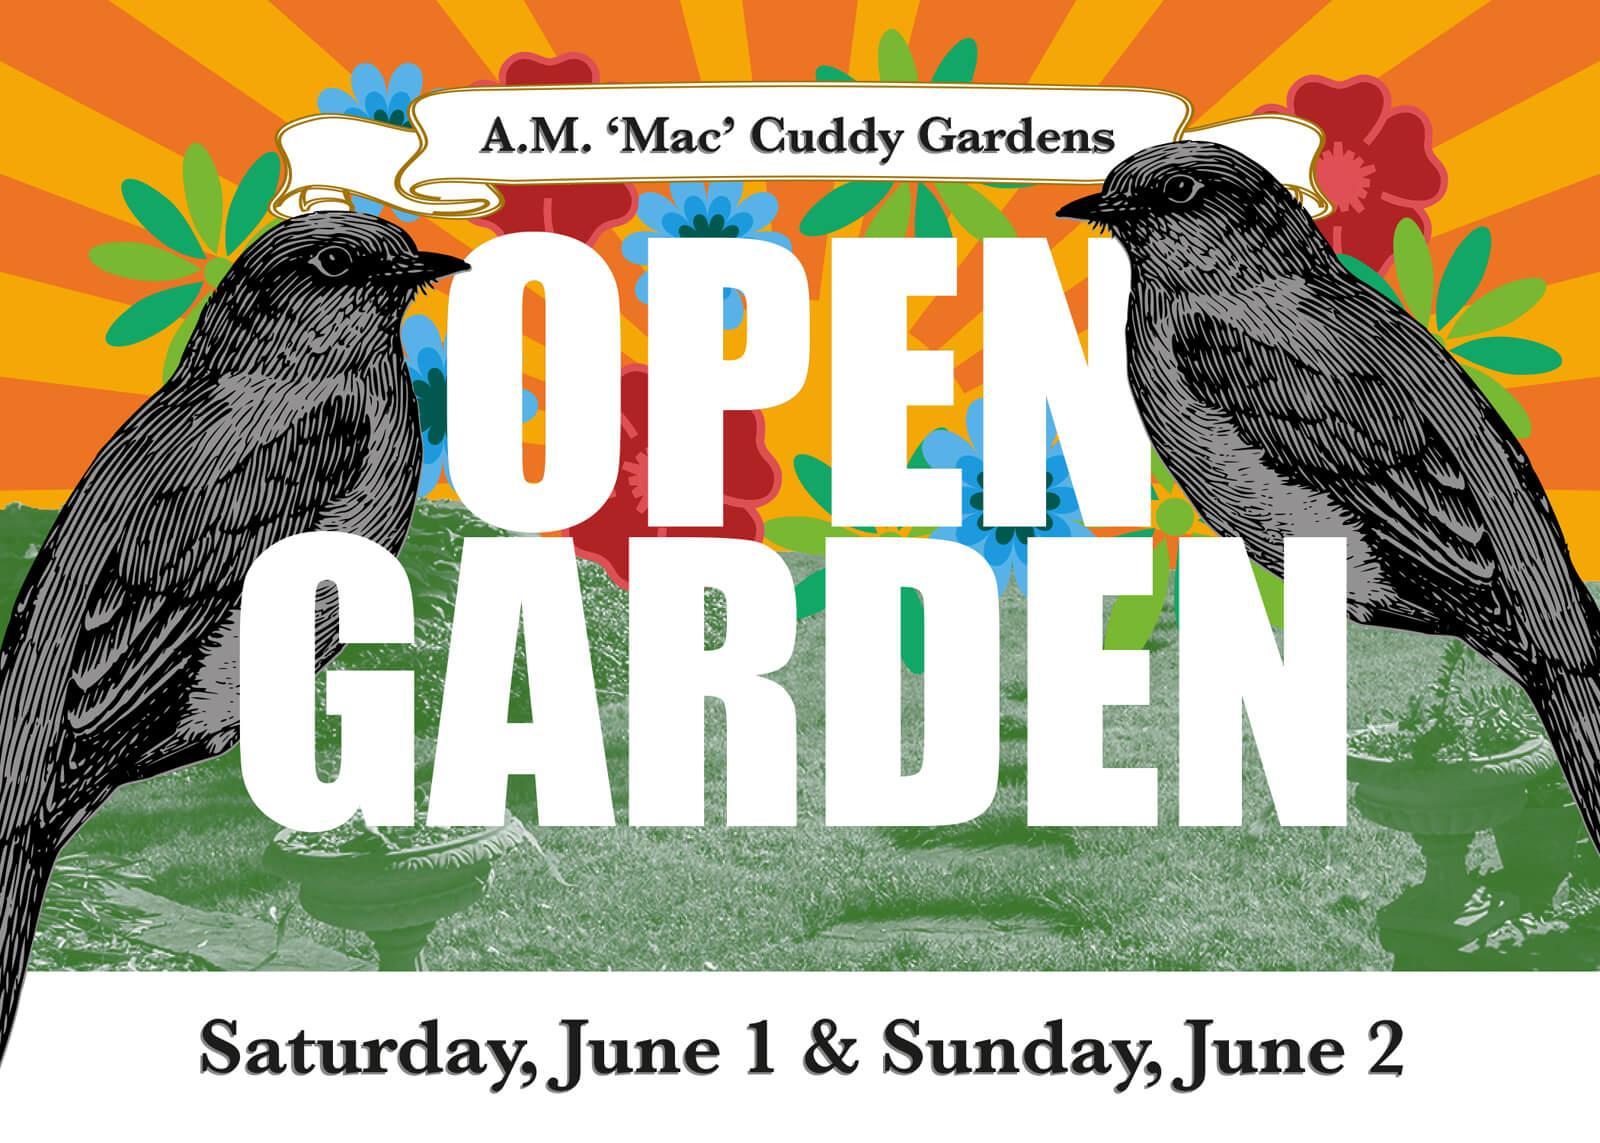 Cuddy Gardens Open Garden and Plant Sale 2019